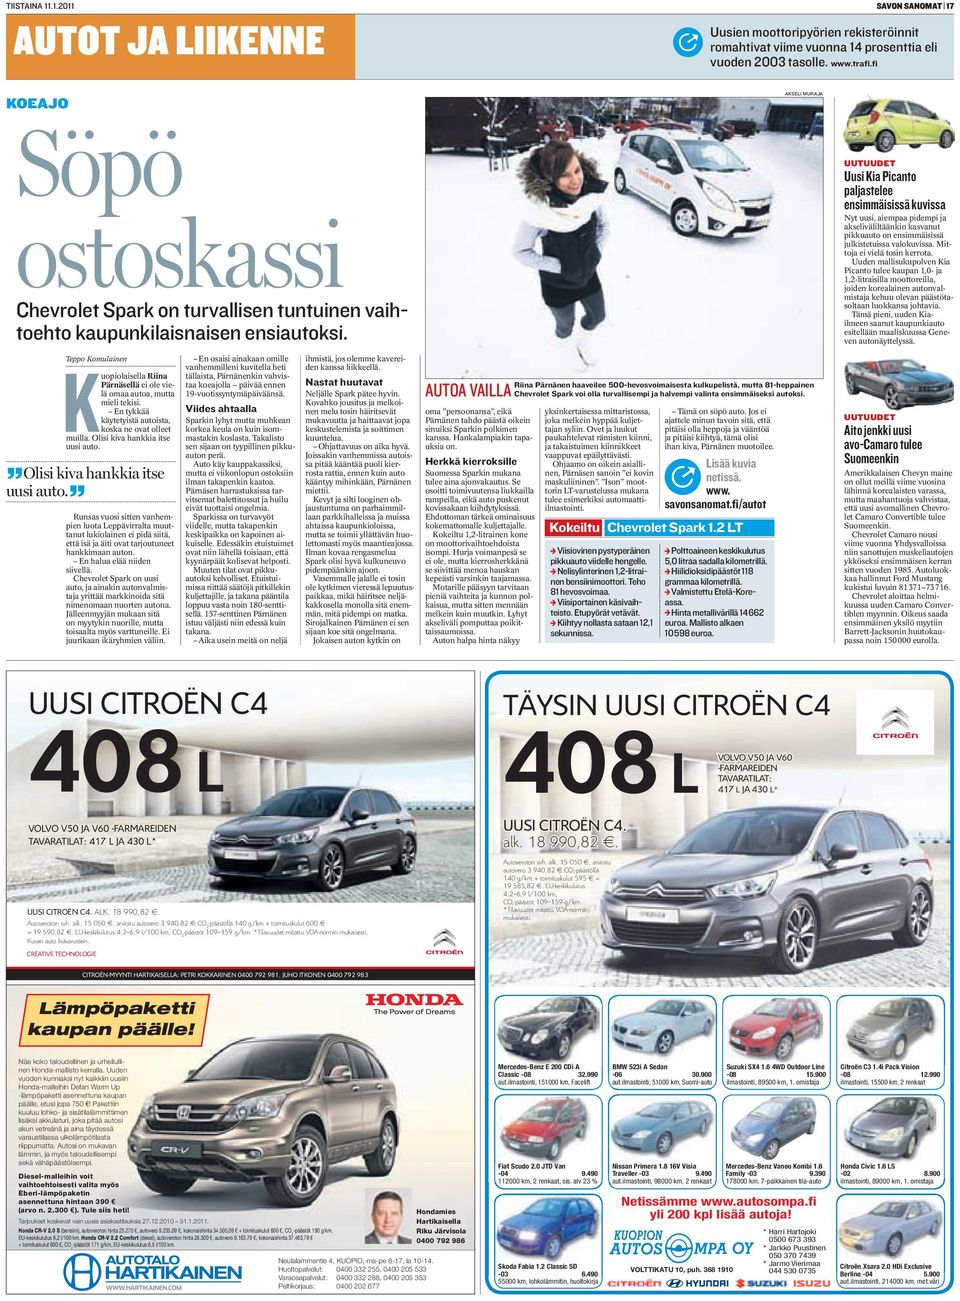 Teppo Komulainen Kuopiolaisella Riina Pärnäsellä ei ole vielä omaa autoa, mutta mieli tekisi. En tykkää käytetyistä autoista, koska ne ovat olleet muilla. Olisi kiva hankkia itse uusi auto.